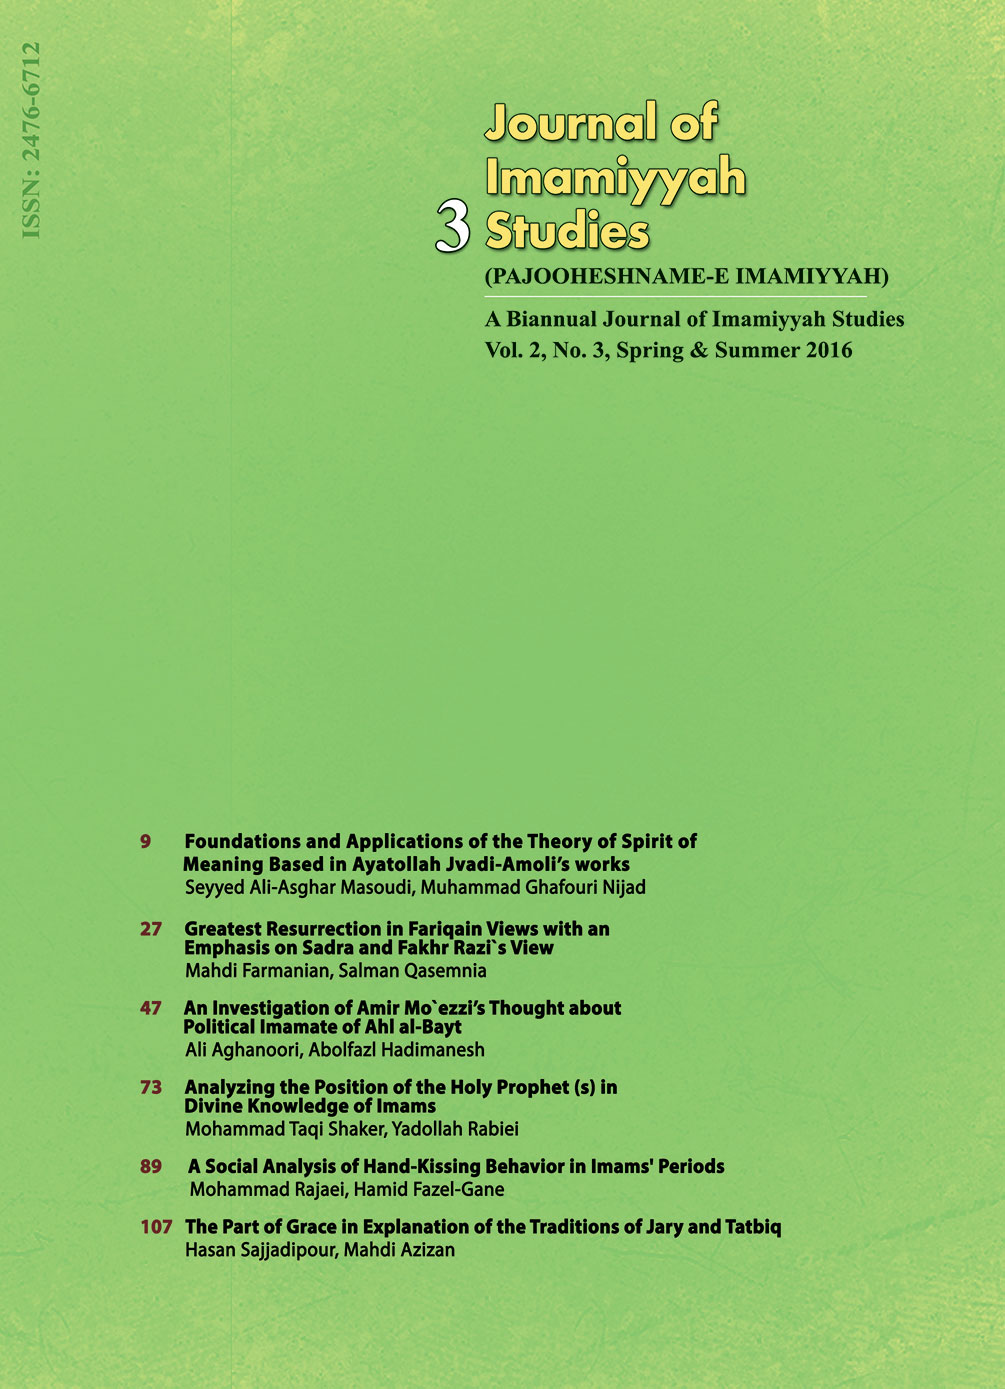 Journal of Imamiyyah Studies